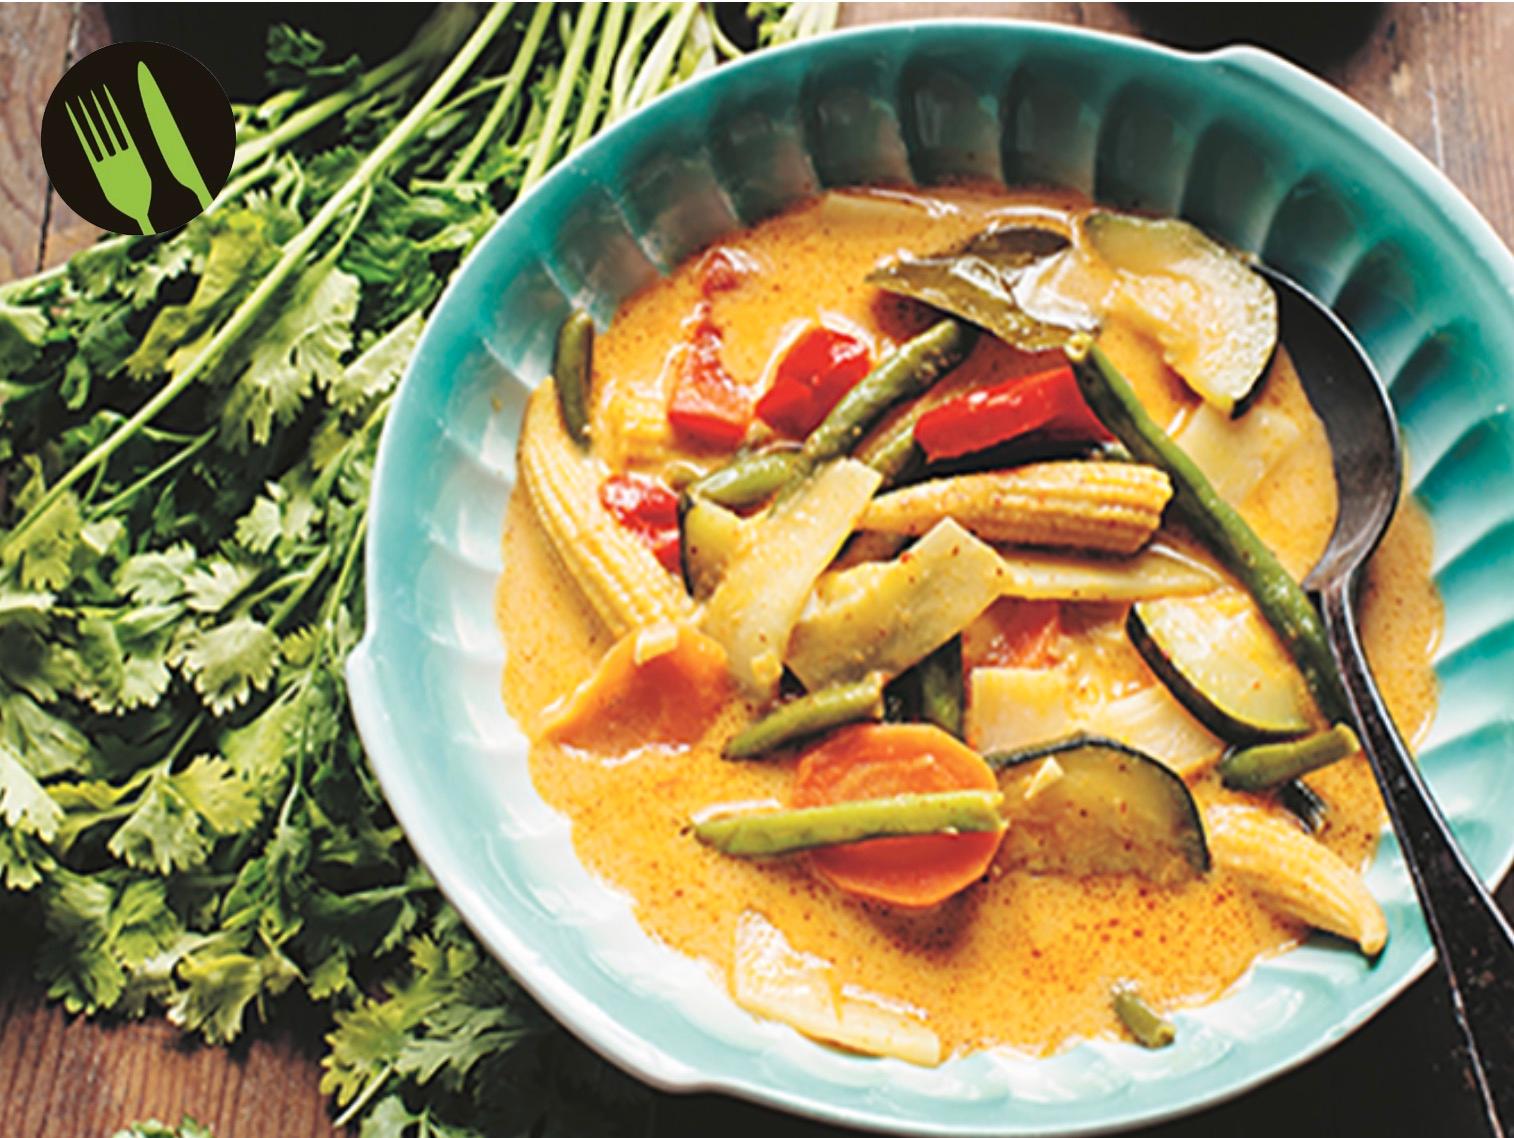 Kaeng phet – röd currygryta med grönsaker.